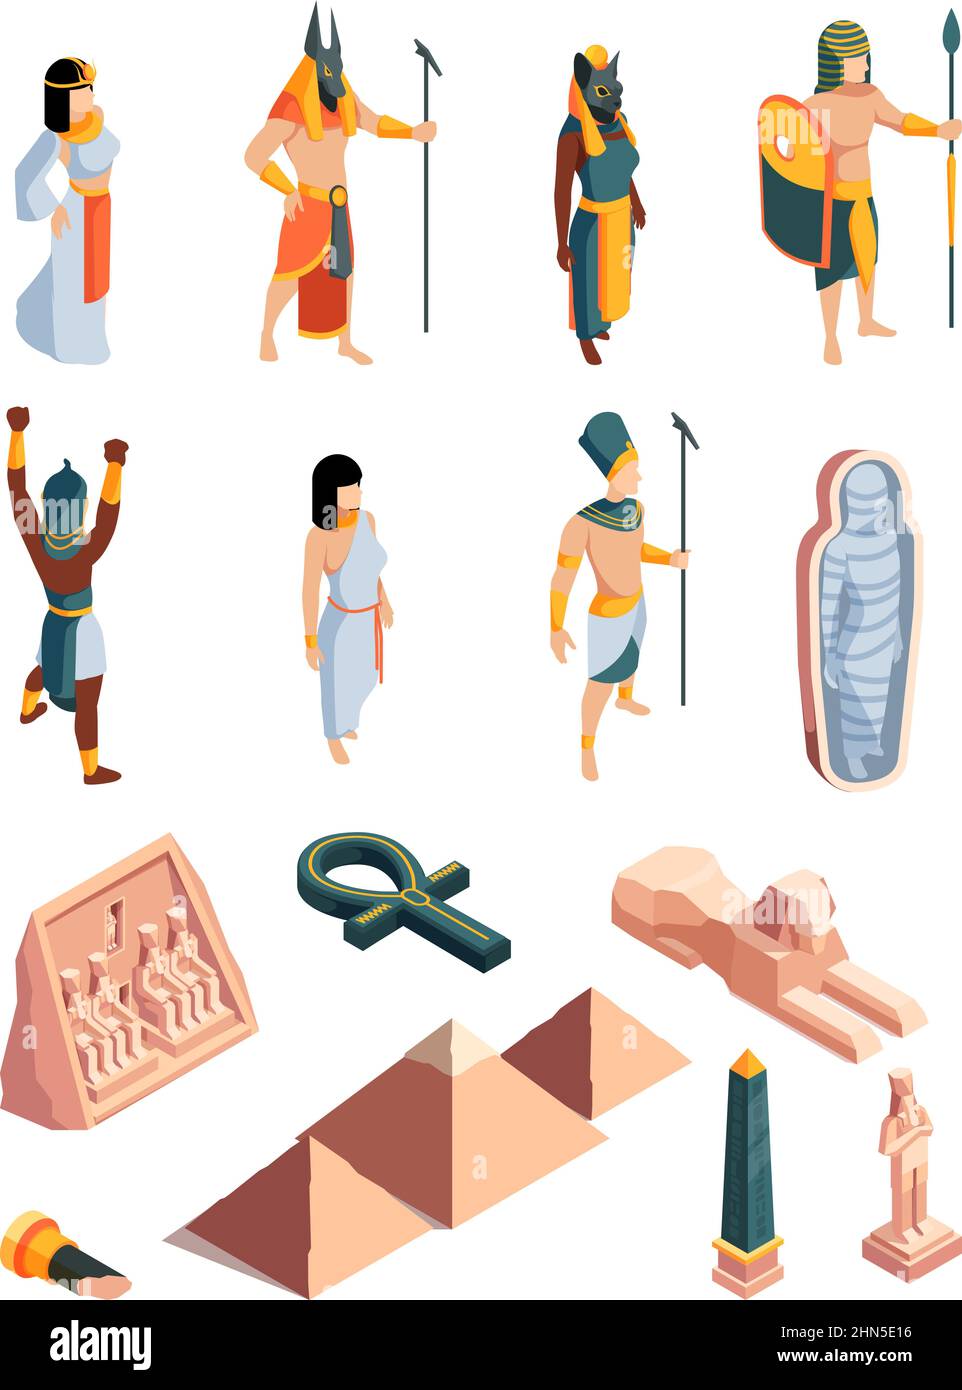 Das alte ägypten. Pyramide pharao Mythologie Figuren Skulpturen von Göttern und Güte antike architektonische historische Objekte grellen Vektor ägypten Stock Vektor